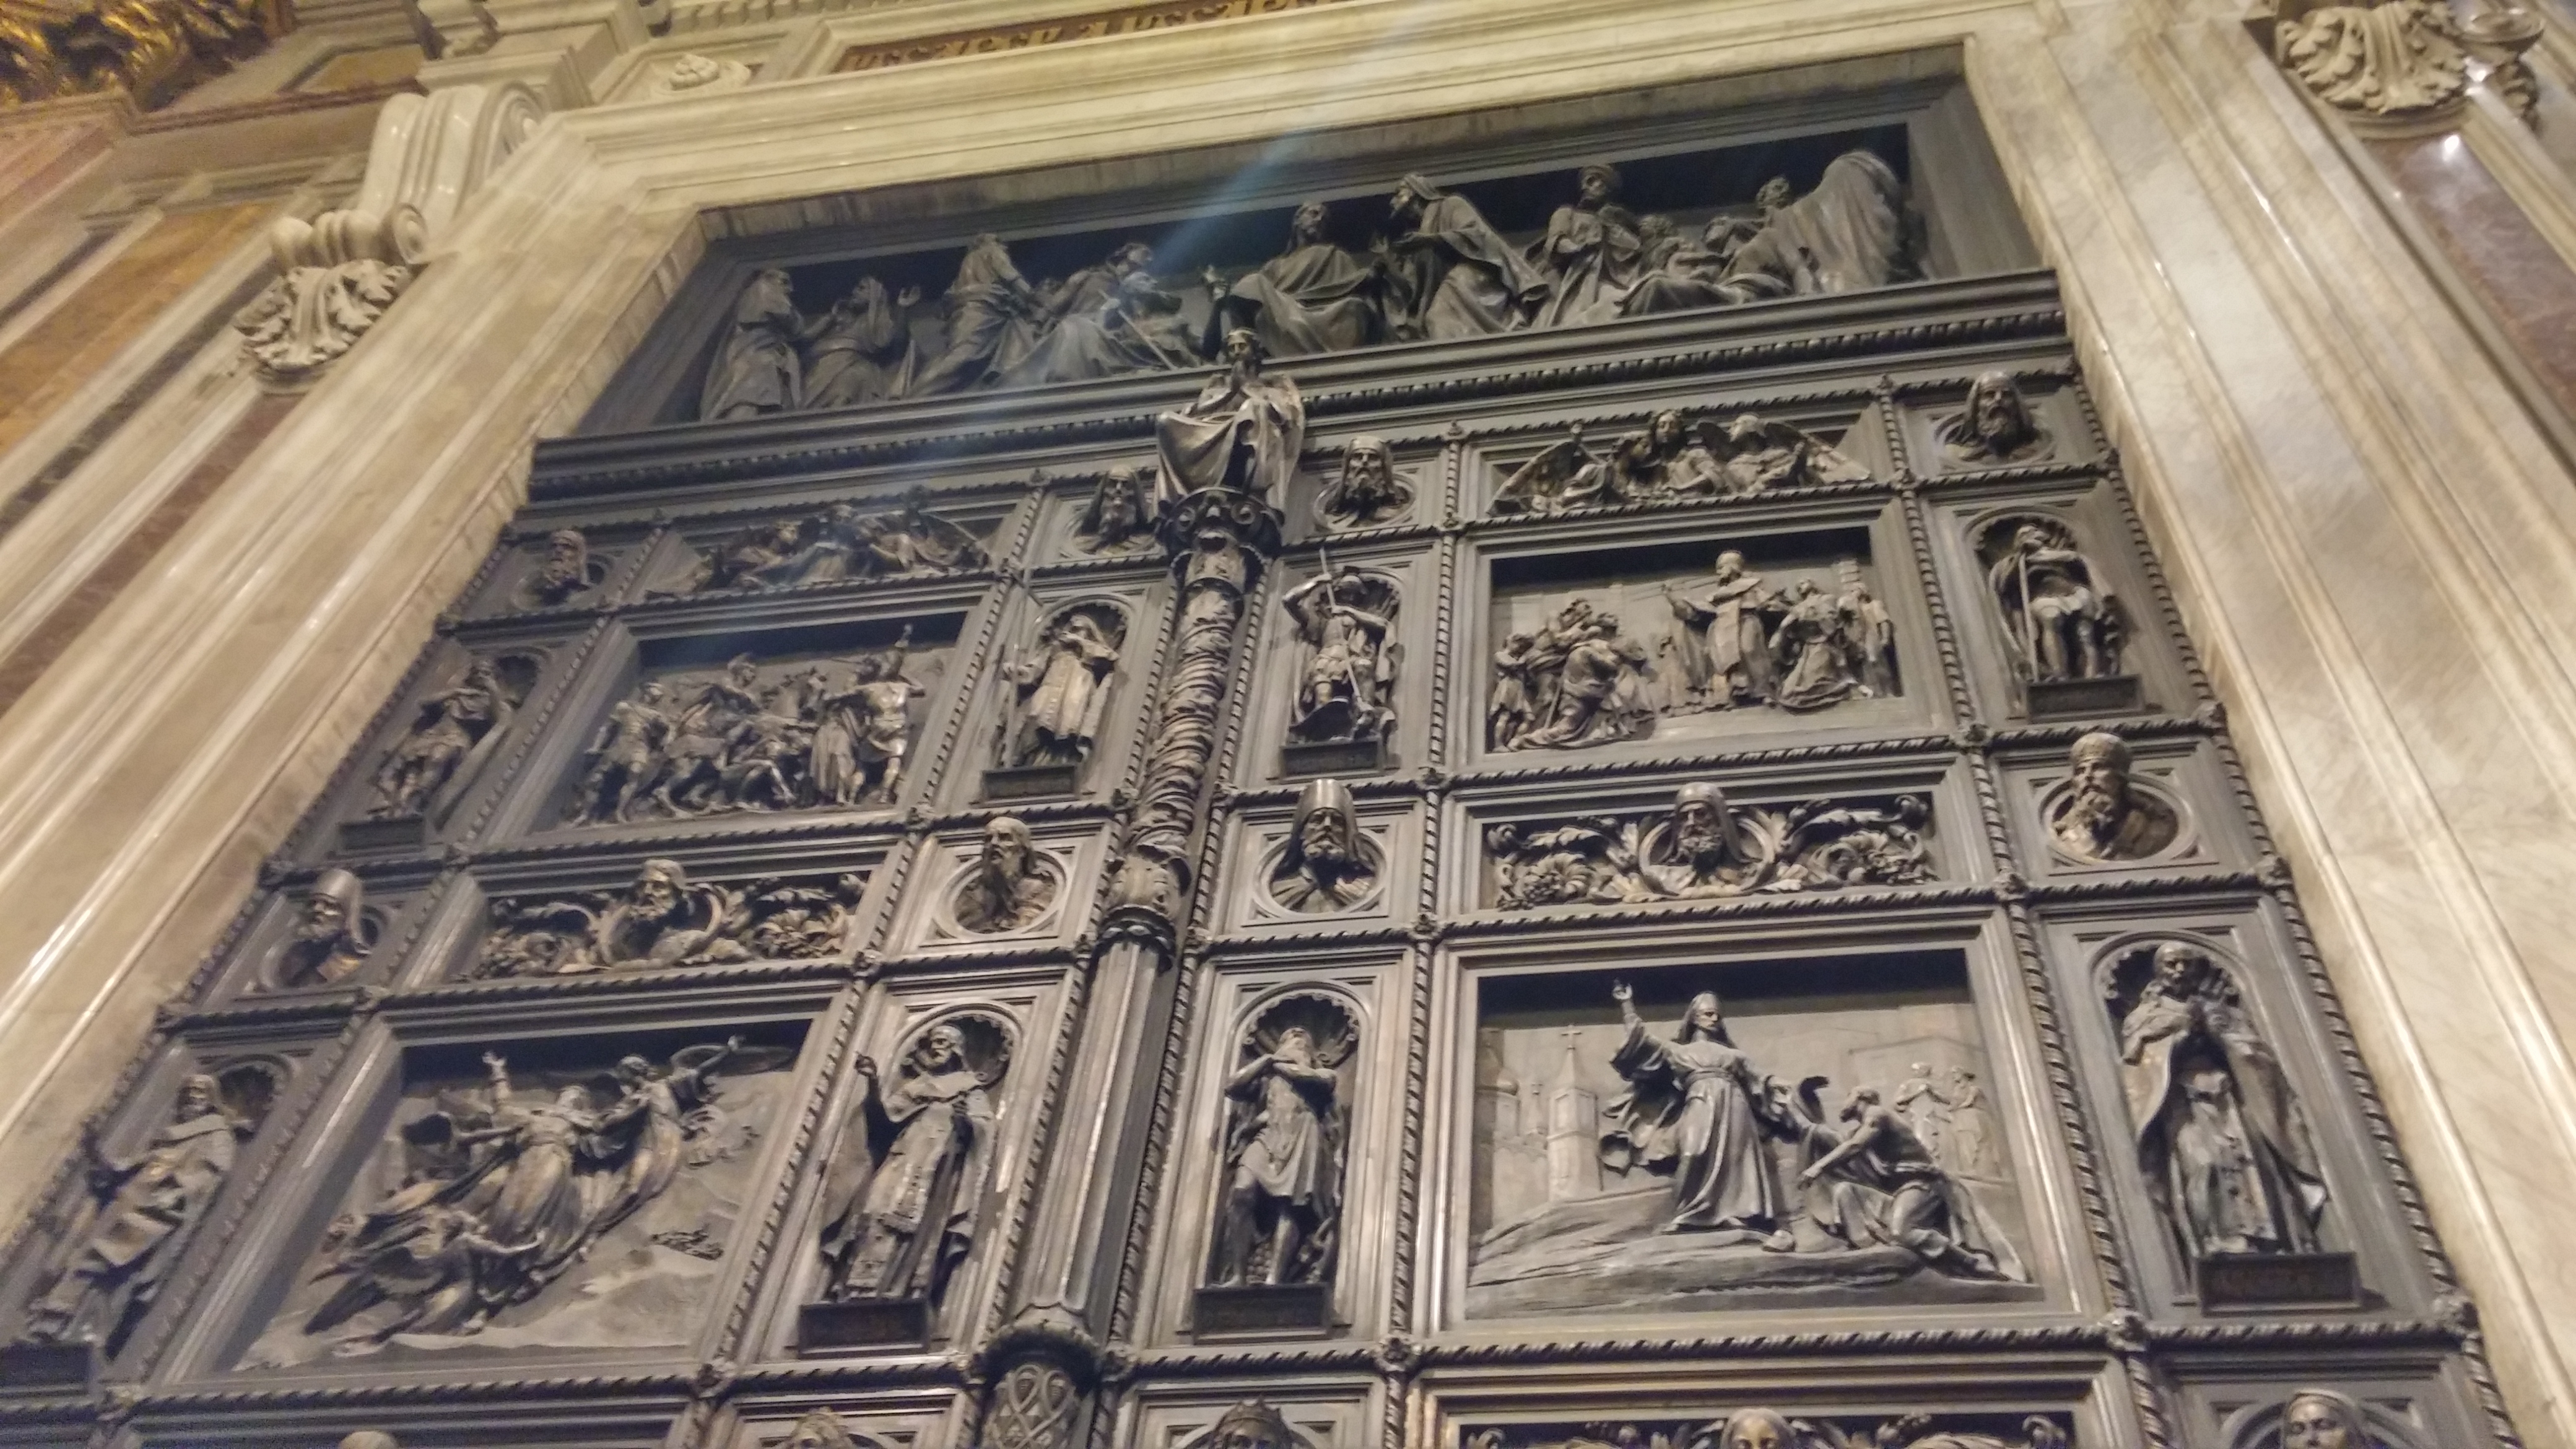 Западные двери исаакиевского собора